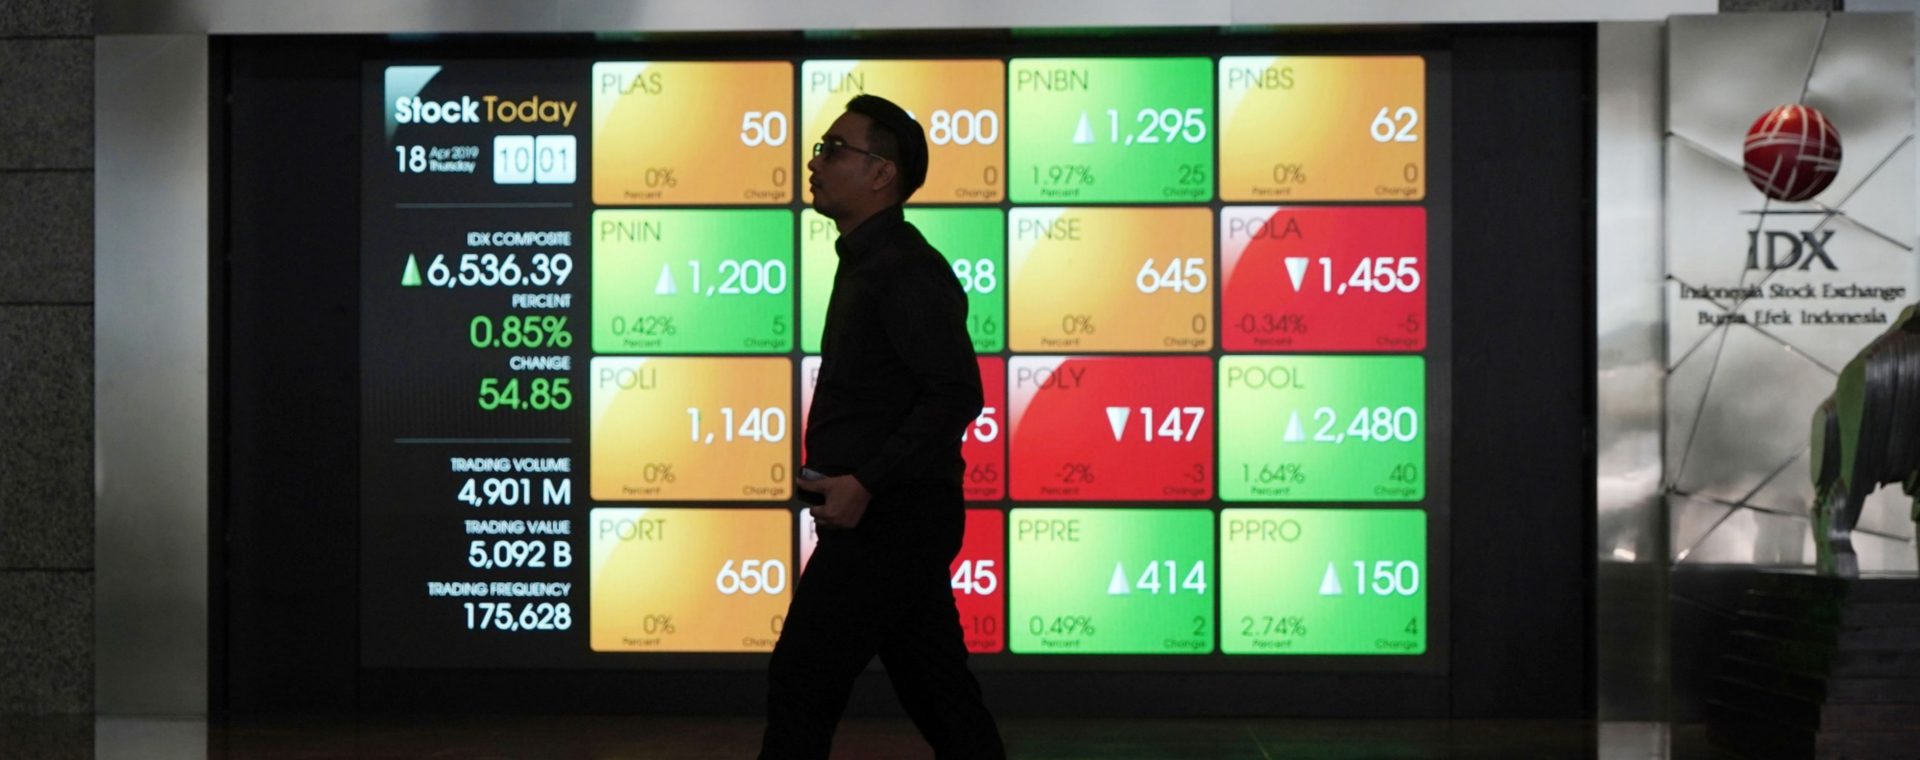 Seorang pria berjalan melewati papan elektronik yang menampilkan harga saham di lobi Bursa Efek Indonesia (BEI) di Jakarta, Indonesia, pada Kamis, (18/4/2019). Bloomberg - Dimas Ardian